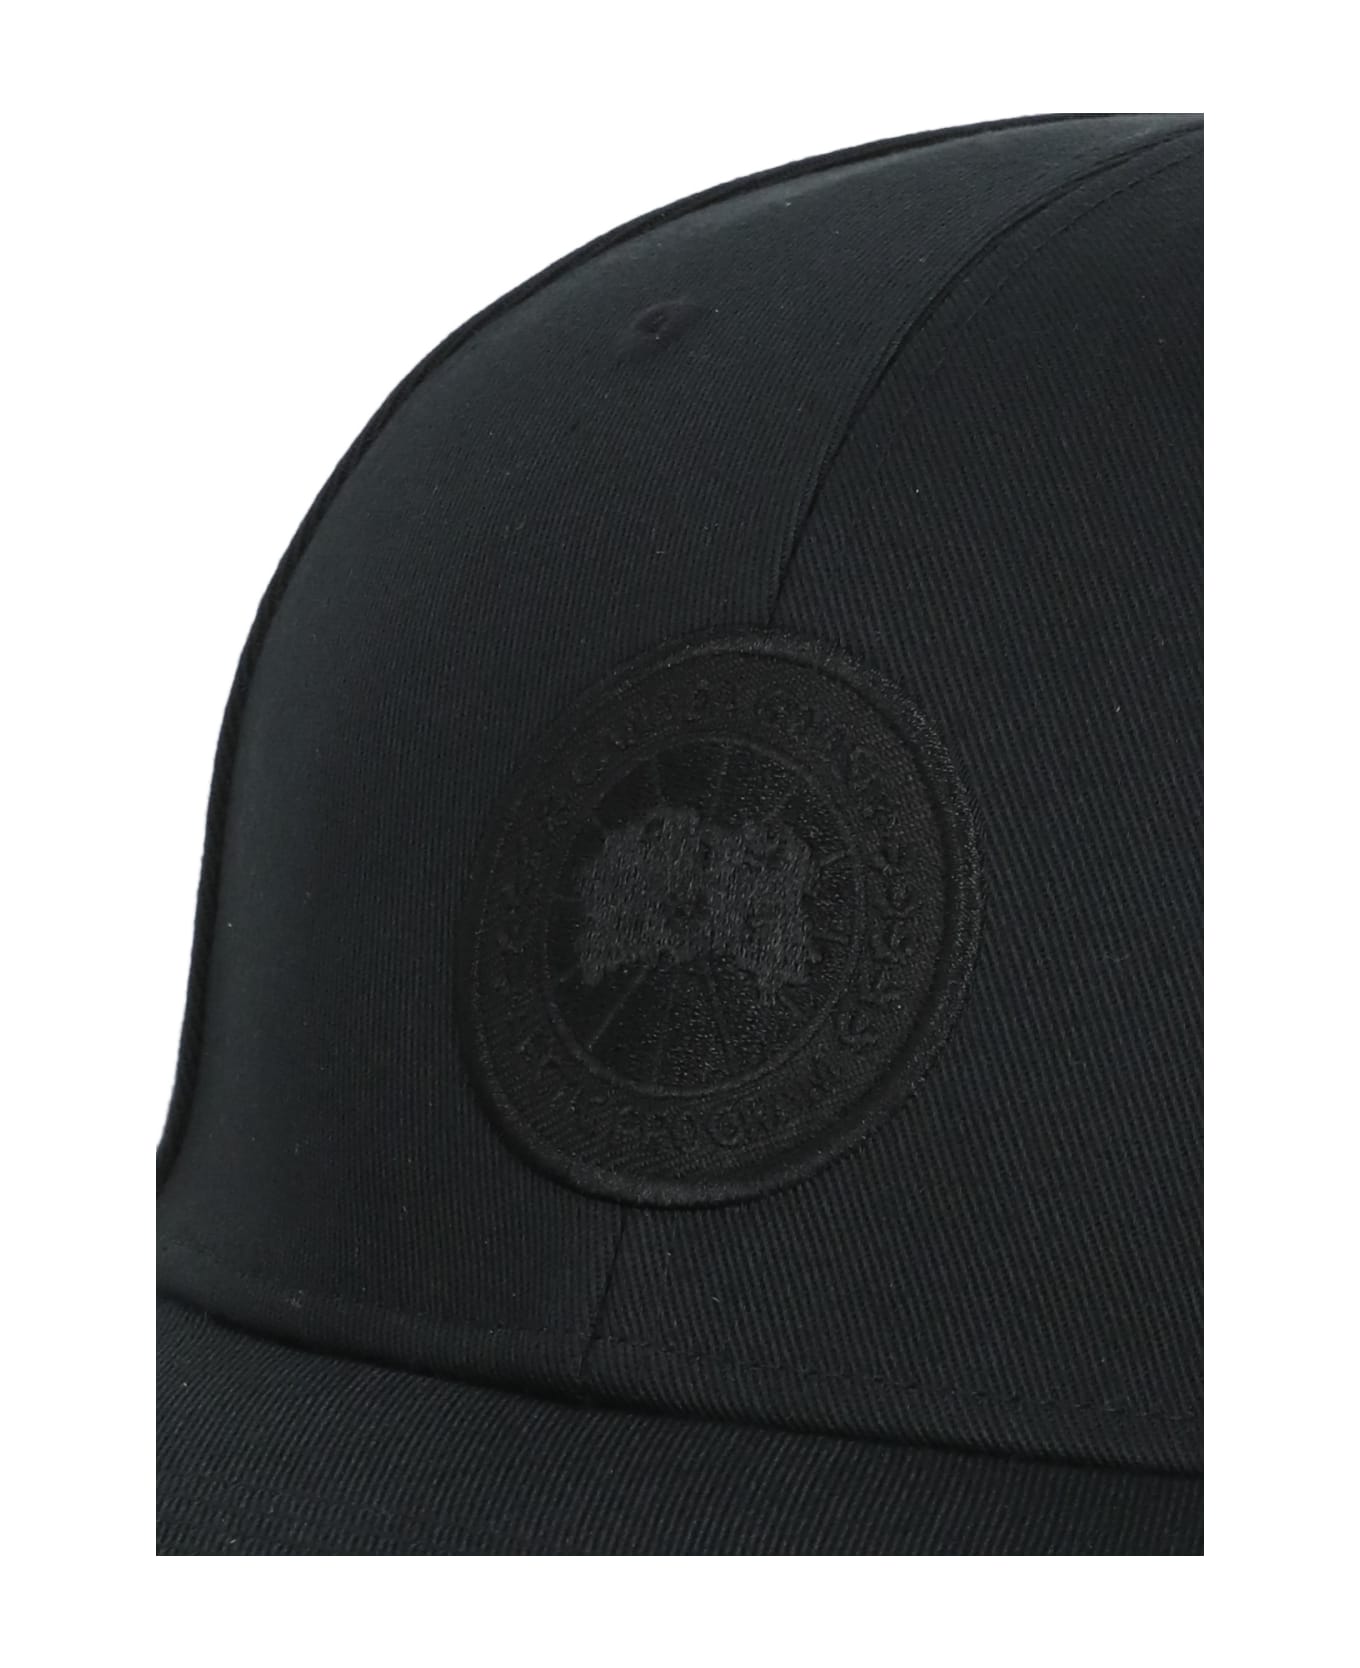 Canada Goose Tonal Baseball Cap - Black